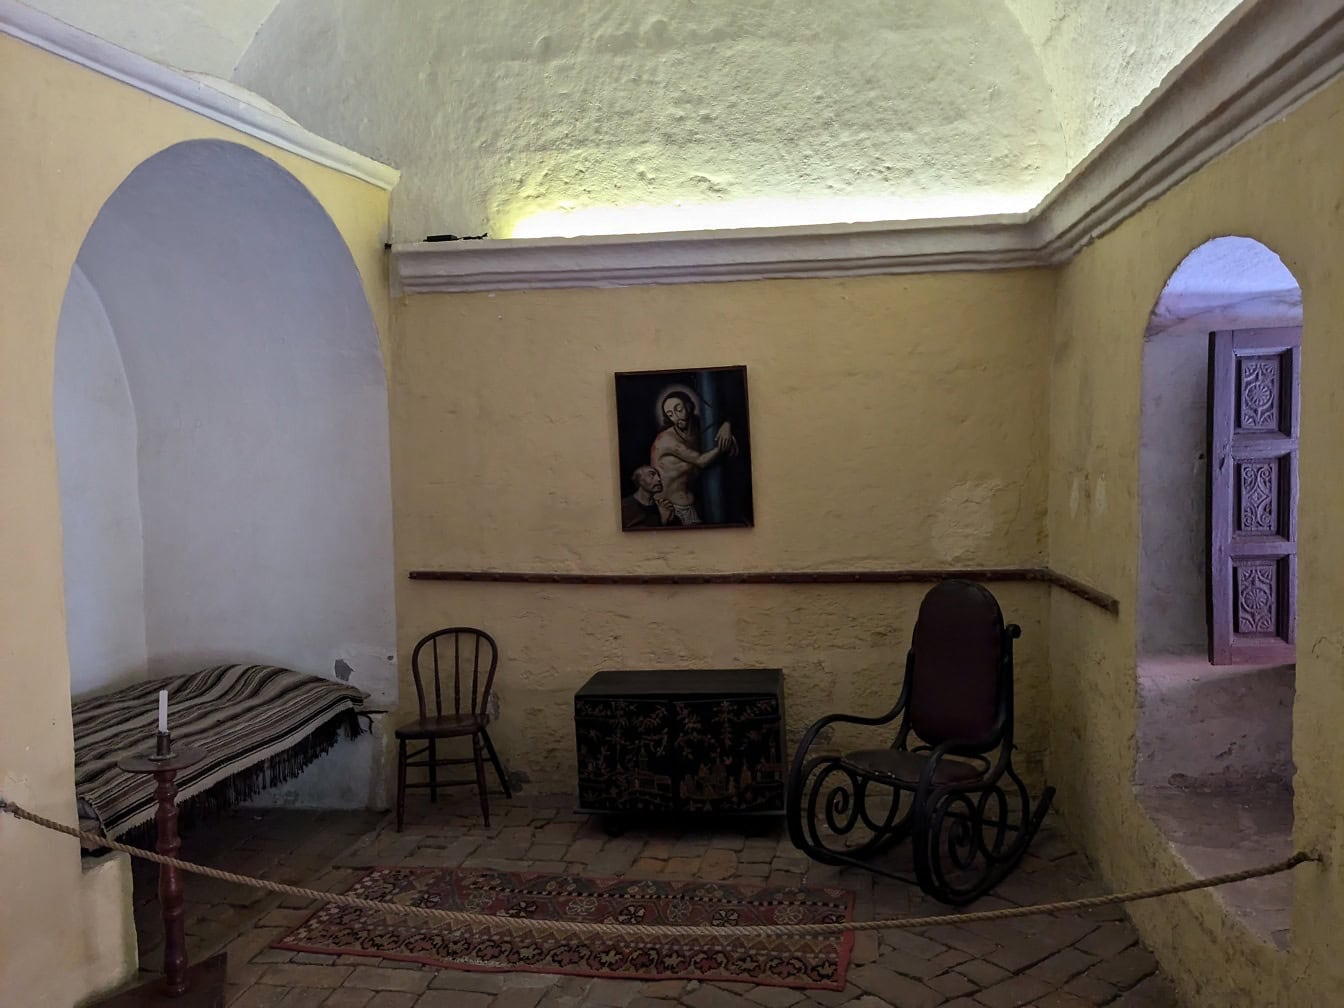 ห้องพักพร้อมเตียงโบราณและเก้าอี้ชิงช้าในพิพิธภัณฑ์ Catalina De Siena ในเปรู ซึ่งได้รับการขึ้นทะเบียนเป็นมรดกโลกโดยองค์การยูเนสโก